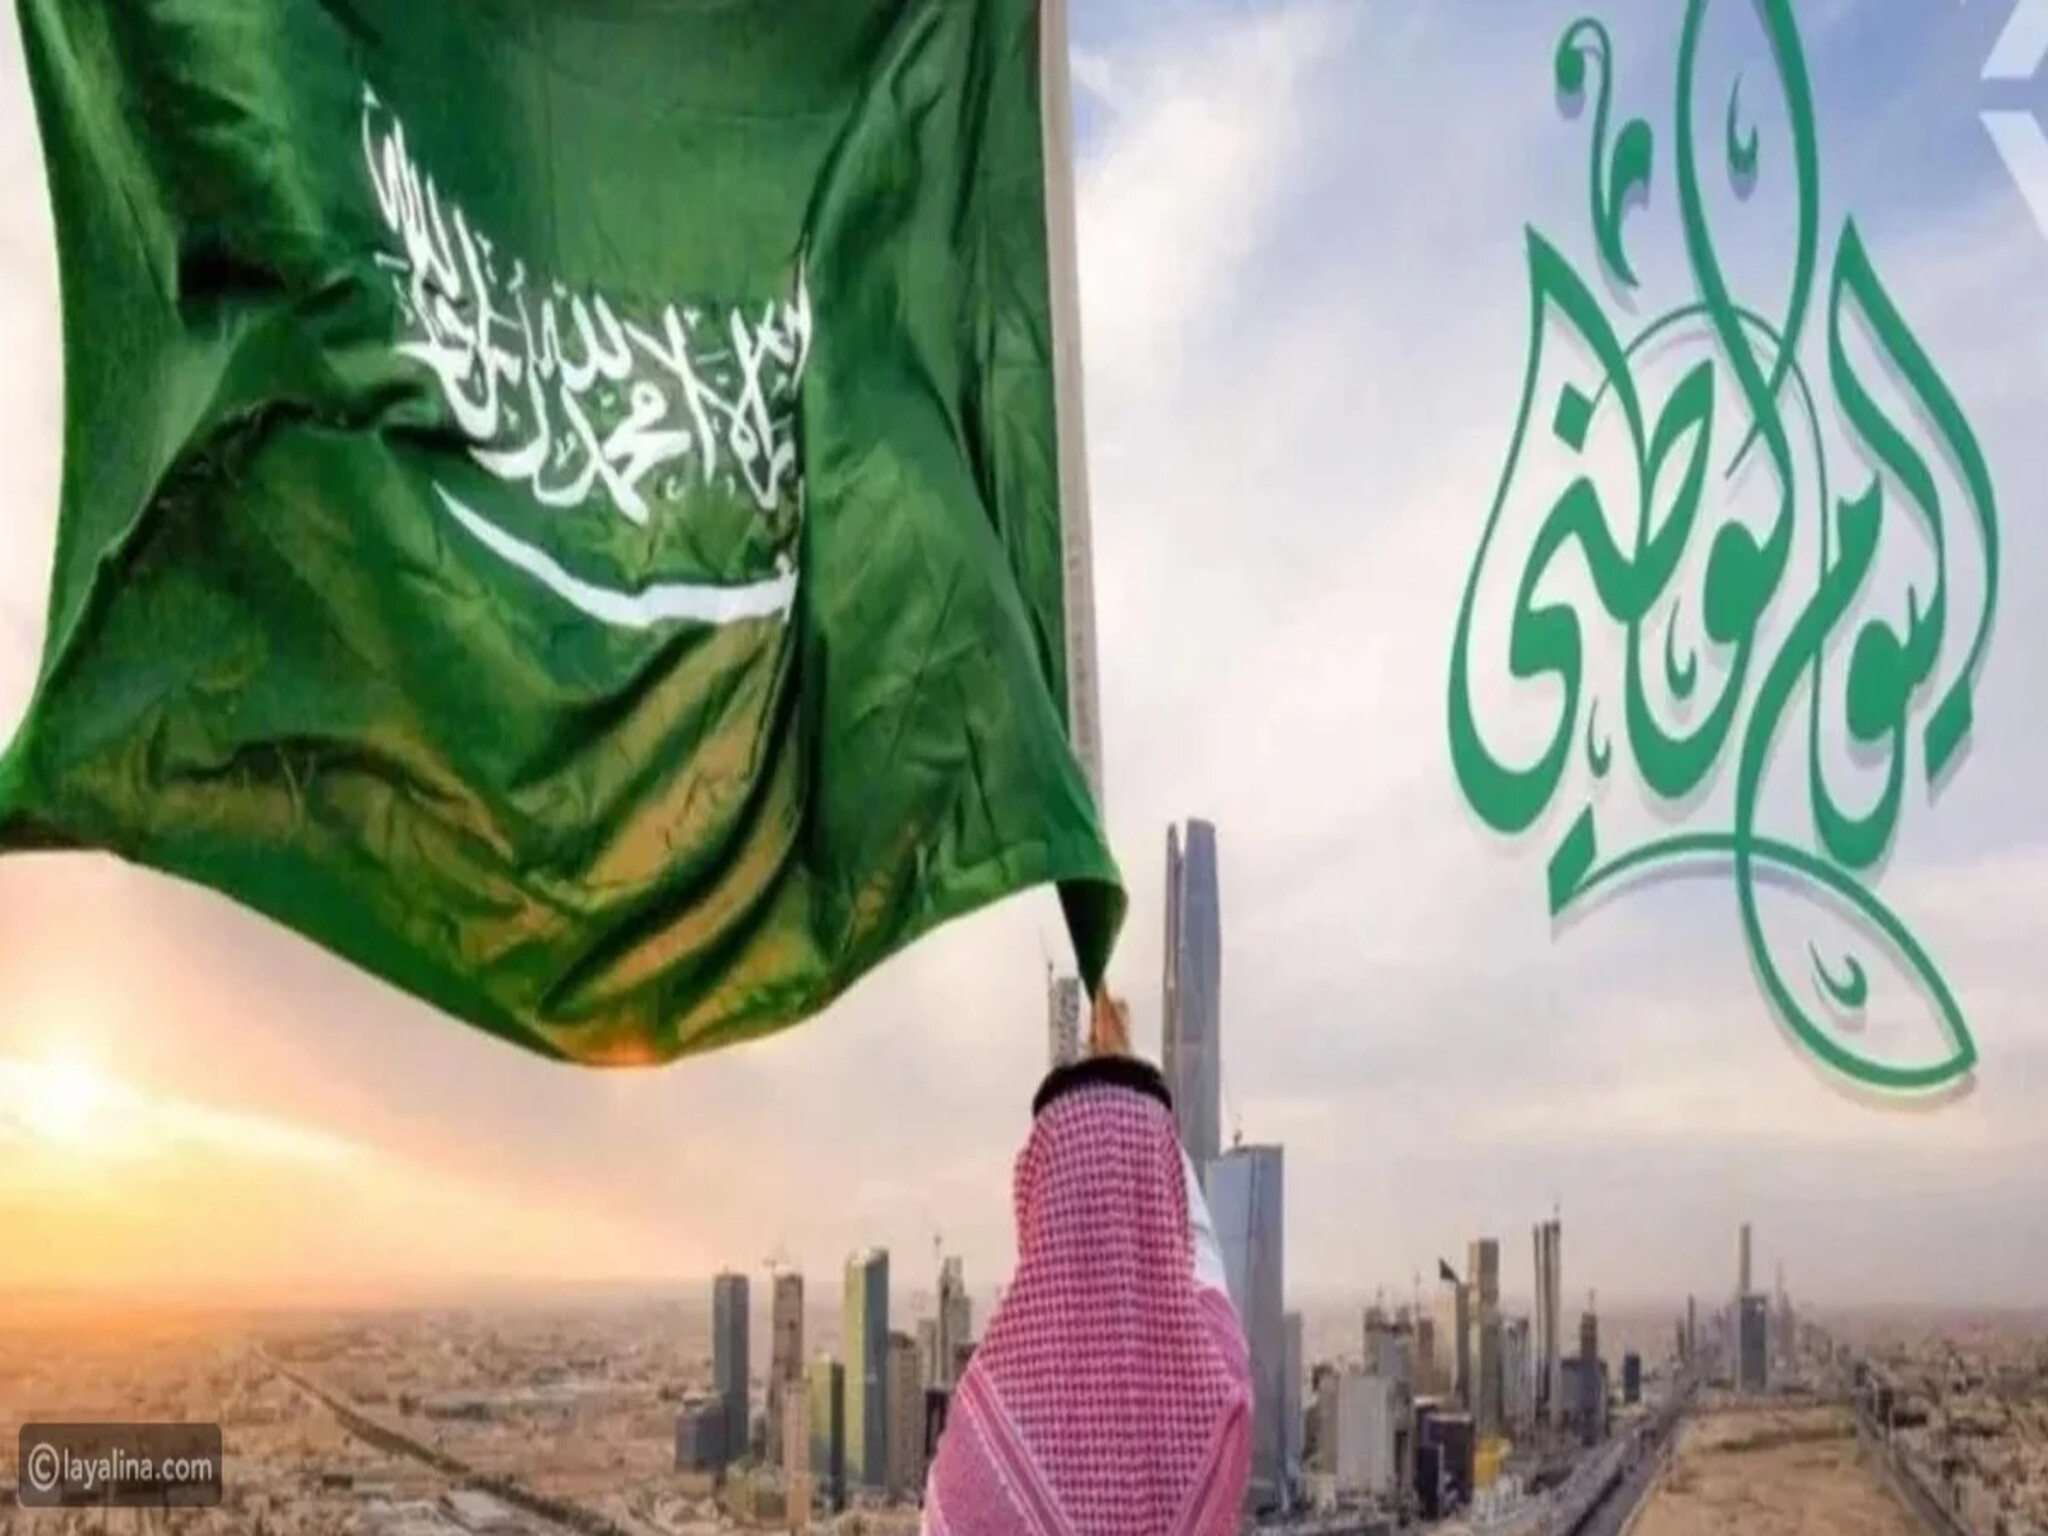  موعد إجازة اليوم الوطني السعودي والهوية الجديدة لهذا اليوم